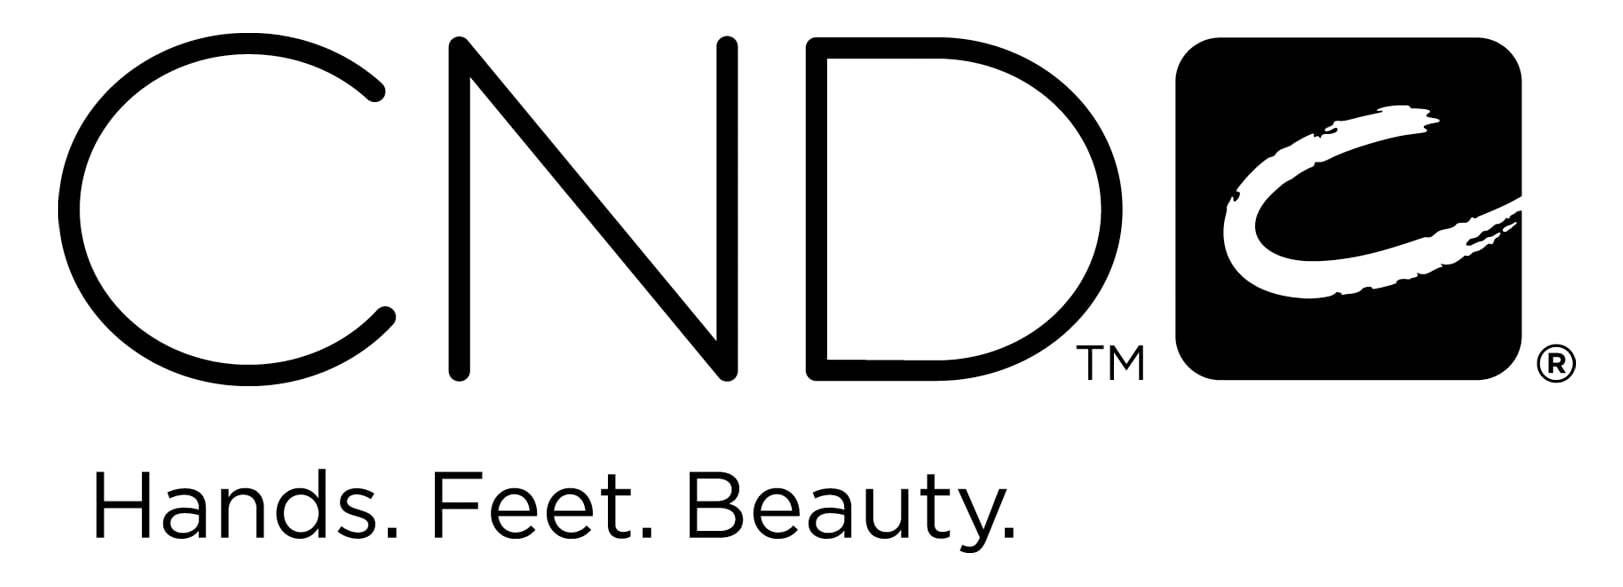 cnd-logo